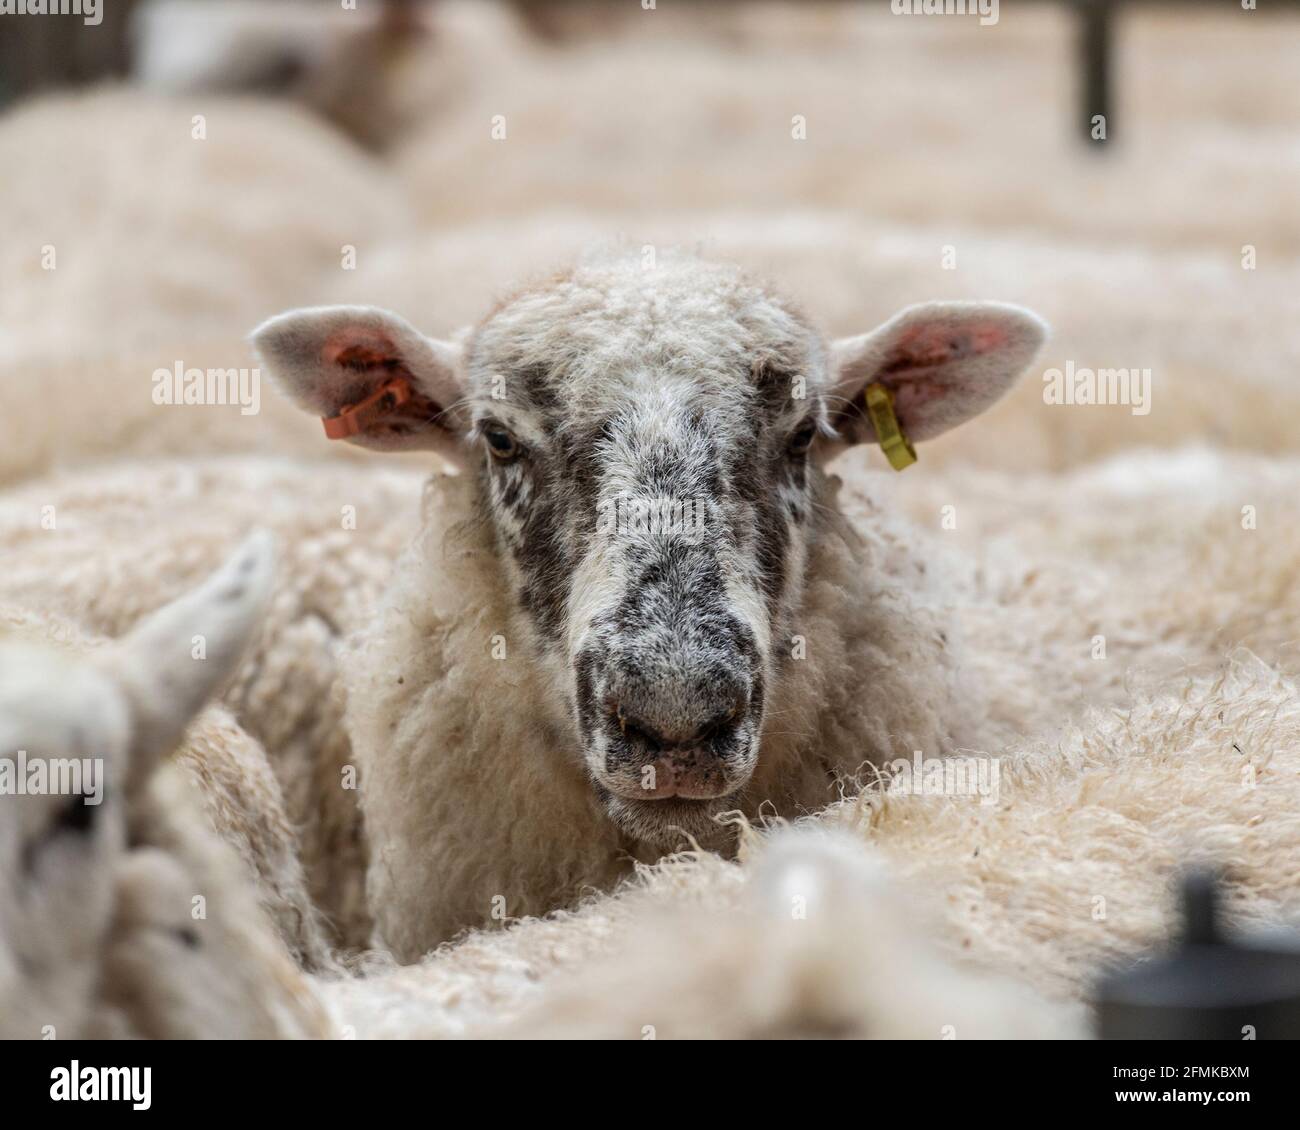 sheep at market Stock Photo